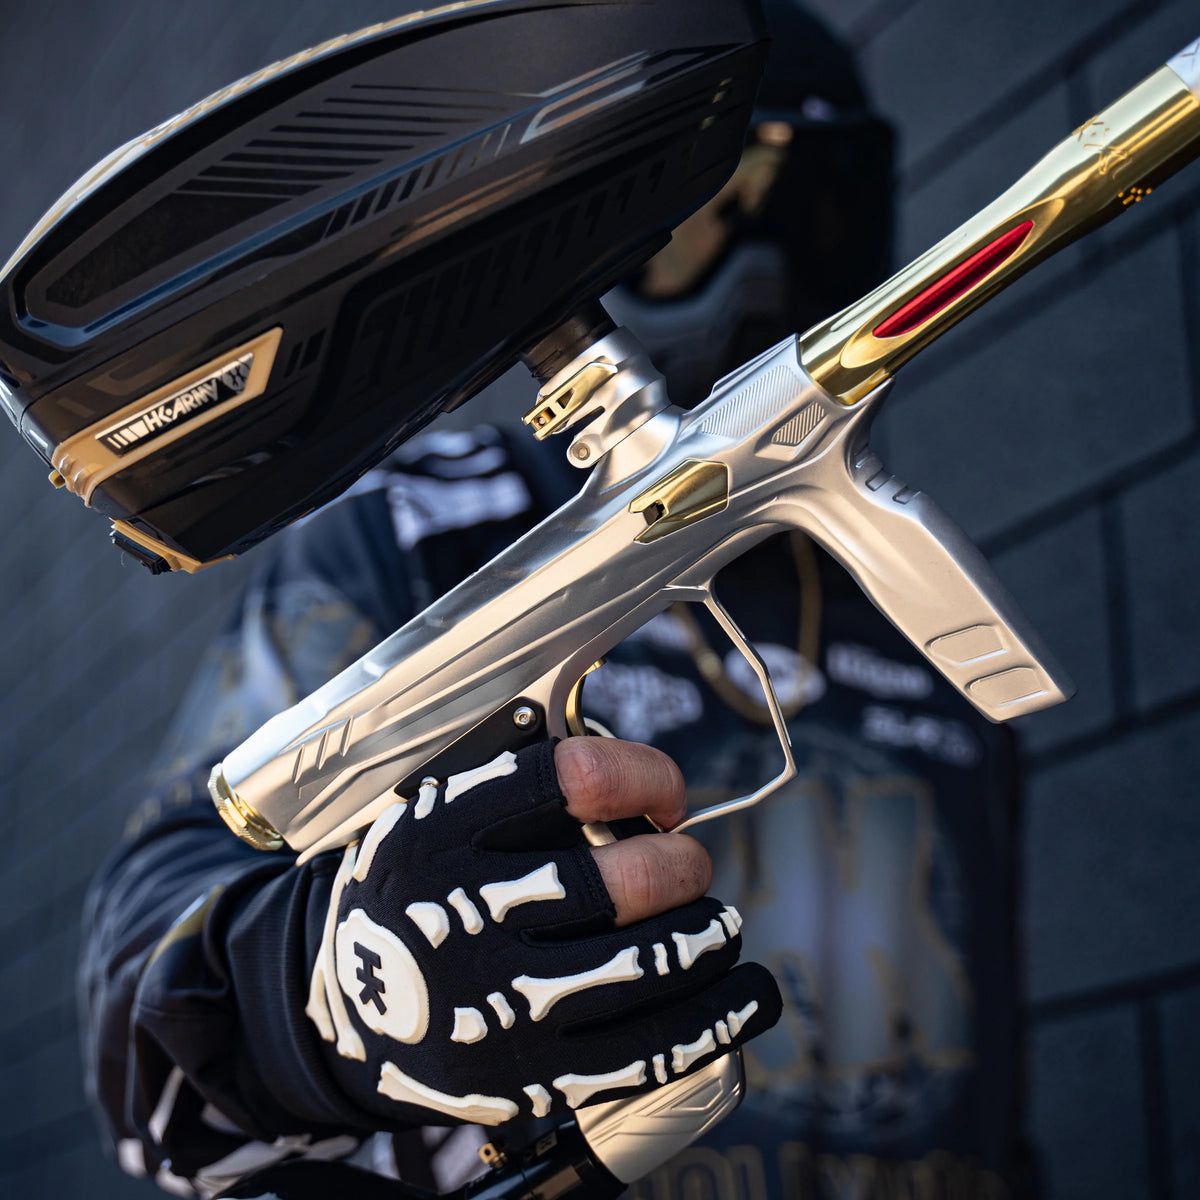 Hk Shocker Amp Paintball Gun | Paintball Marker | Hk Army